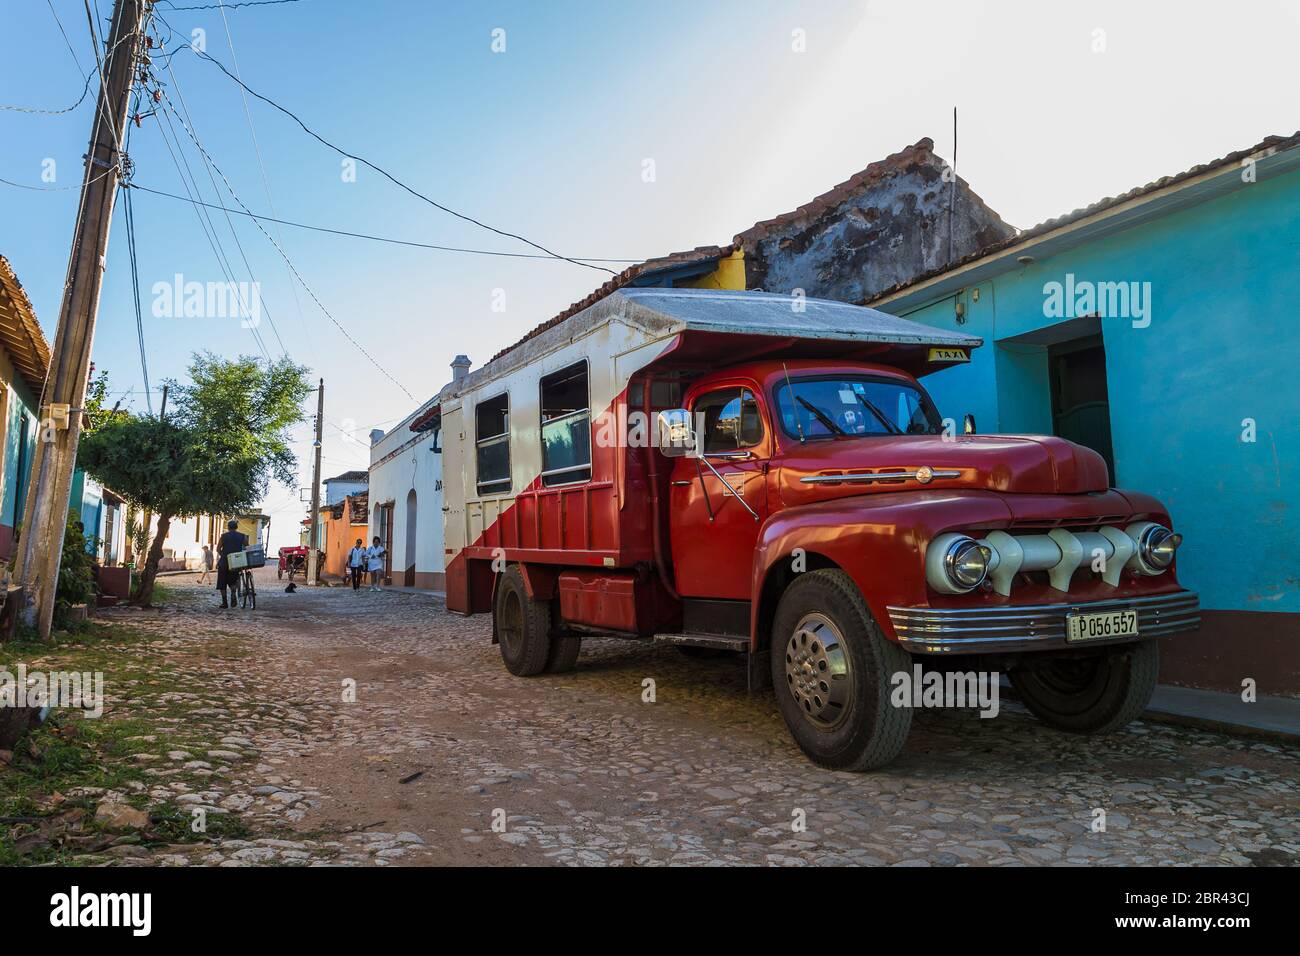 Vettore di persone rosse visto sul lato della strada a Trinidad, Cuba nel novembre 2015. Foto Stock